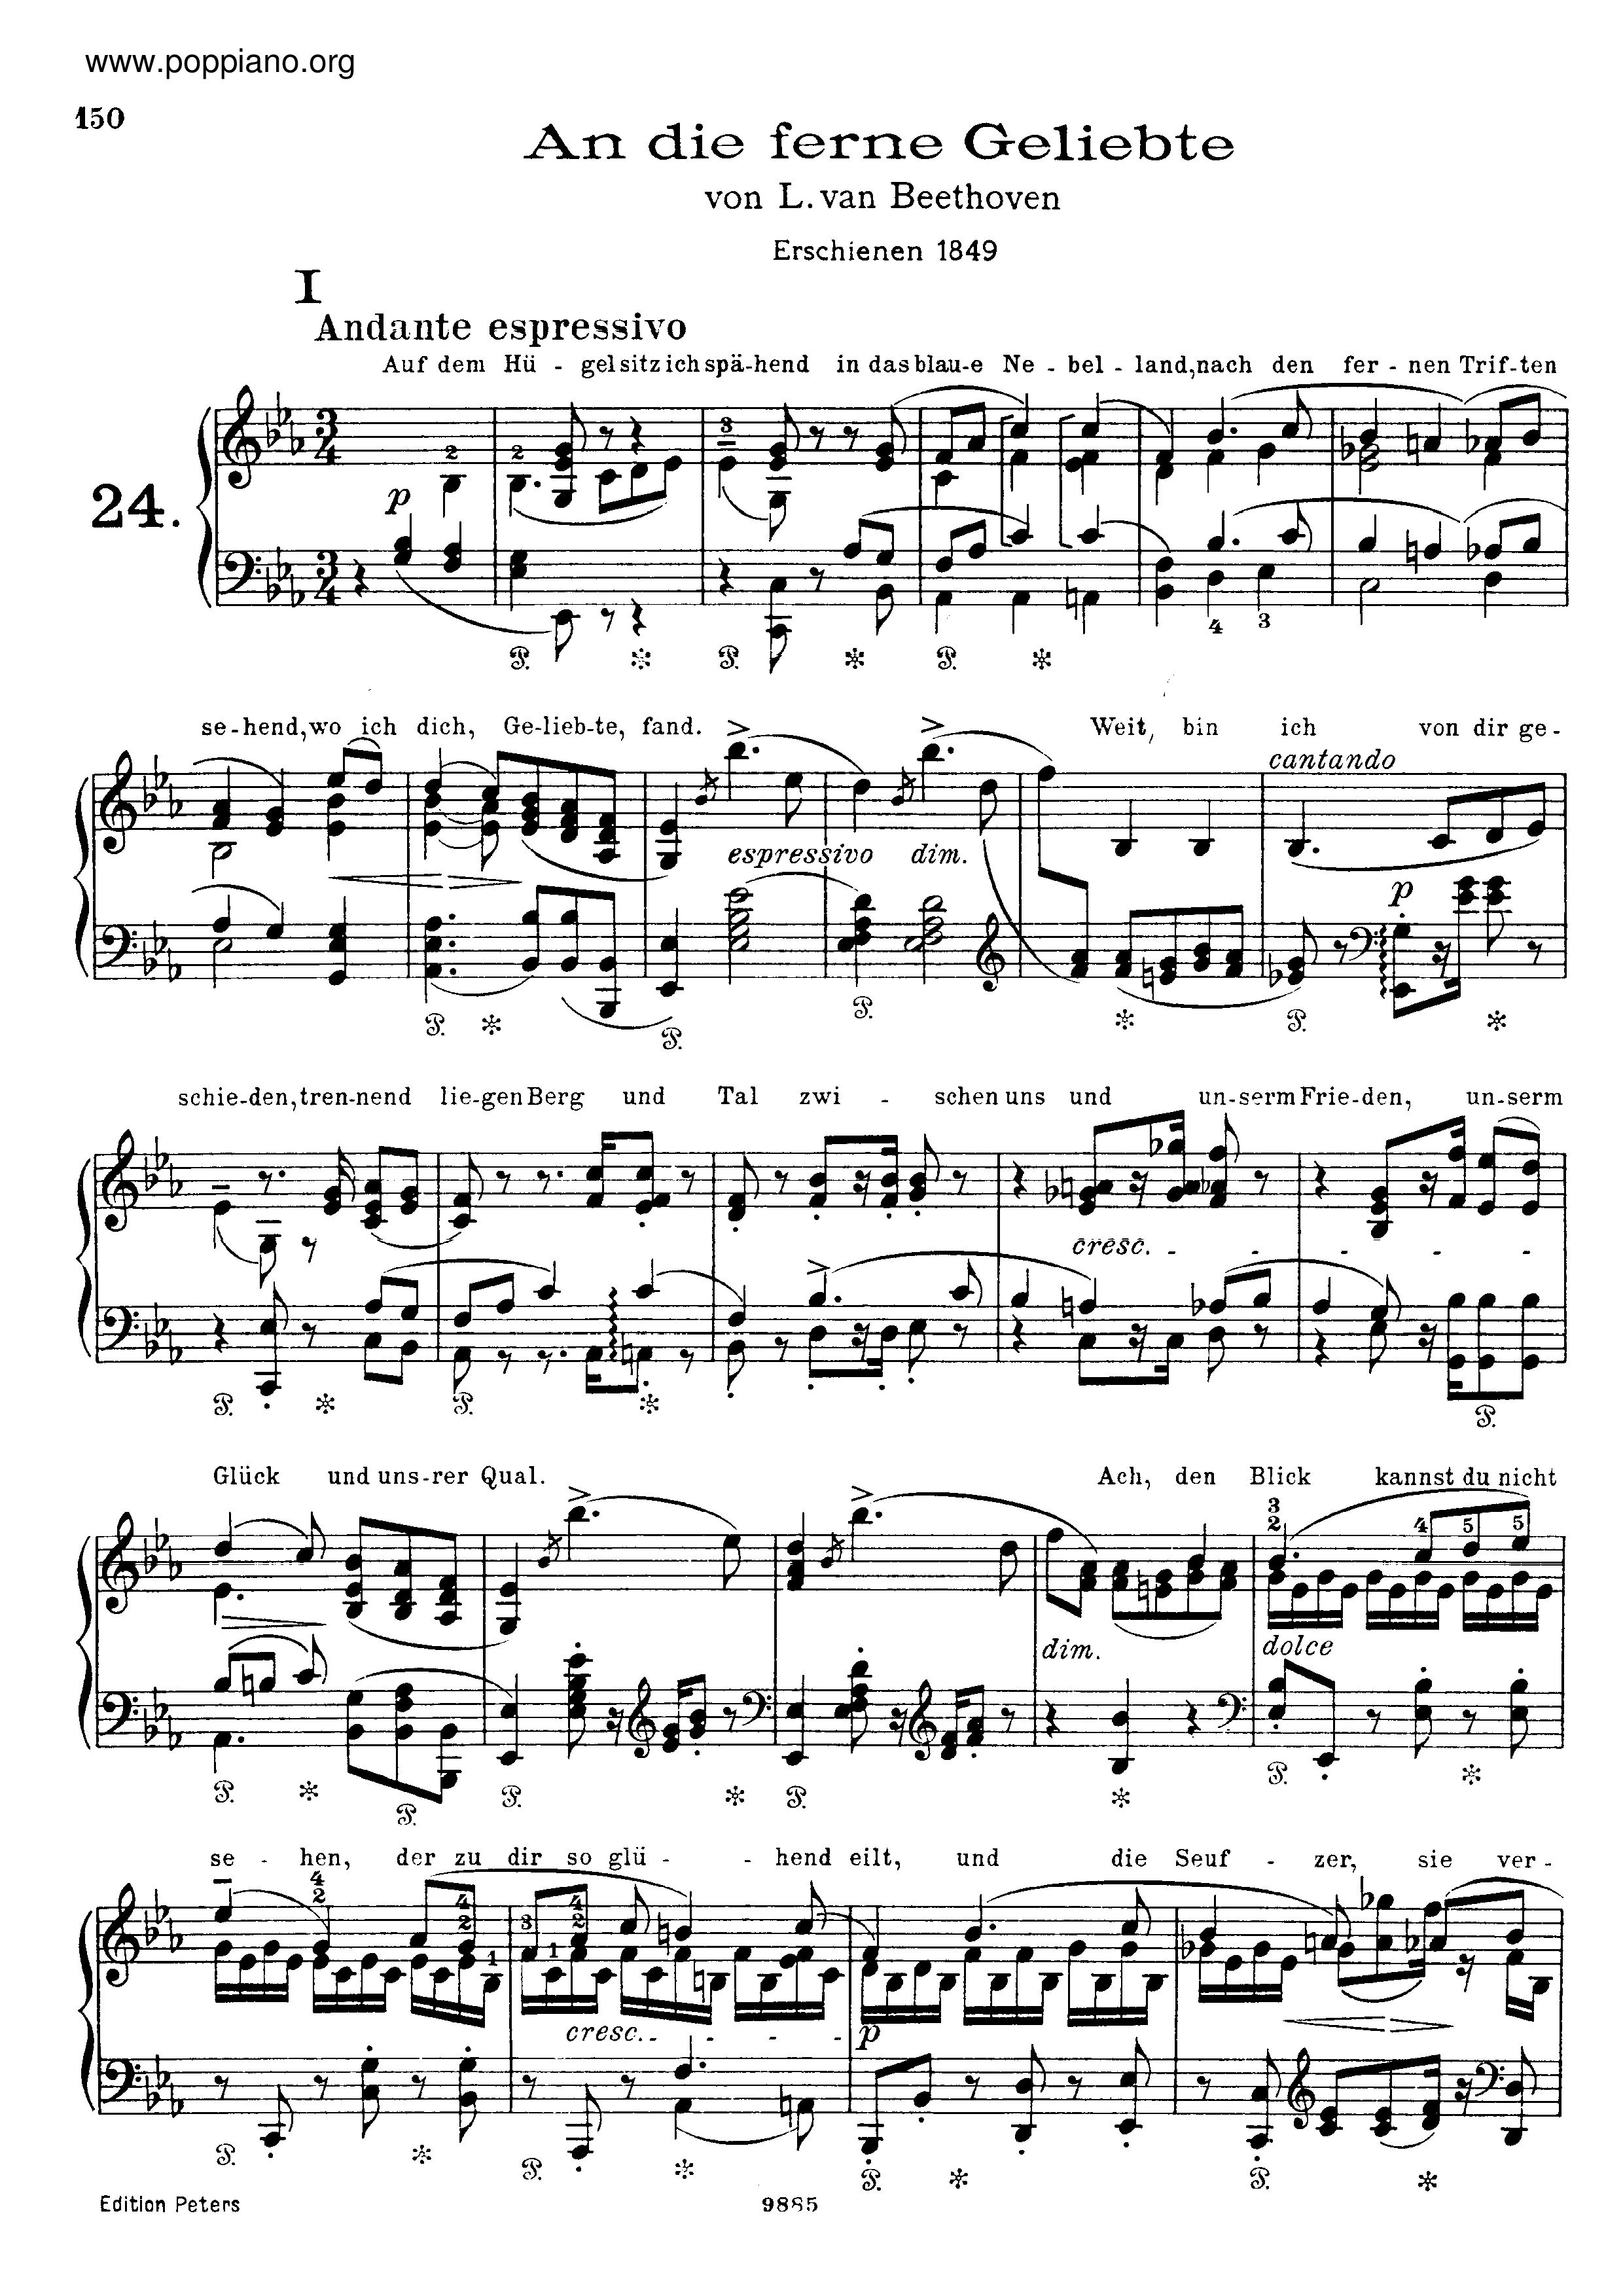 An die ferne Geliebte, by Beethoven, S.469琴谱